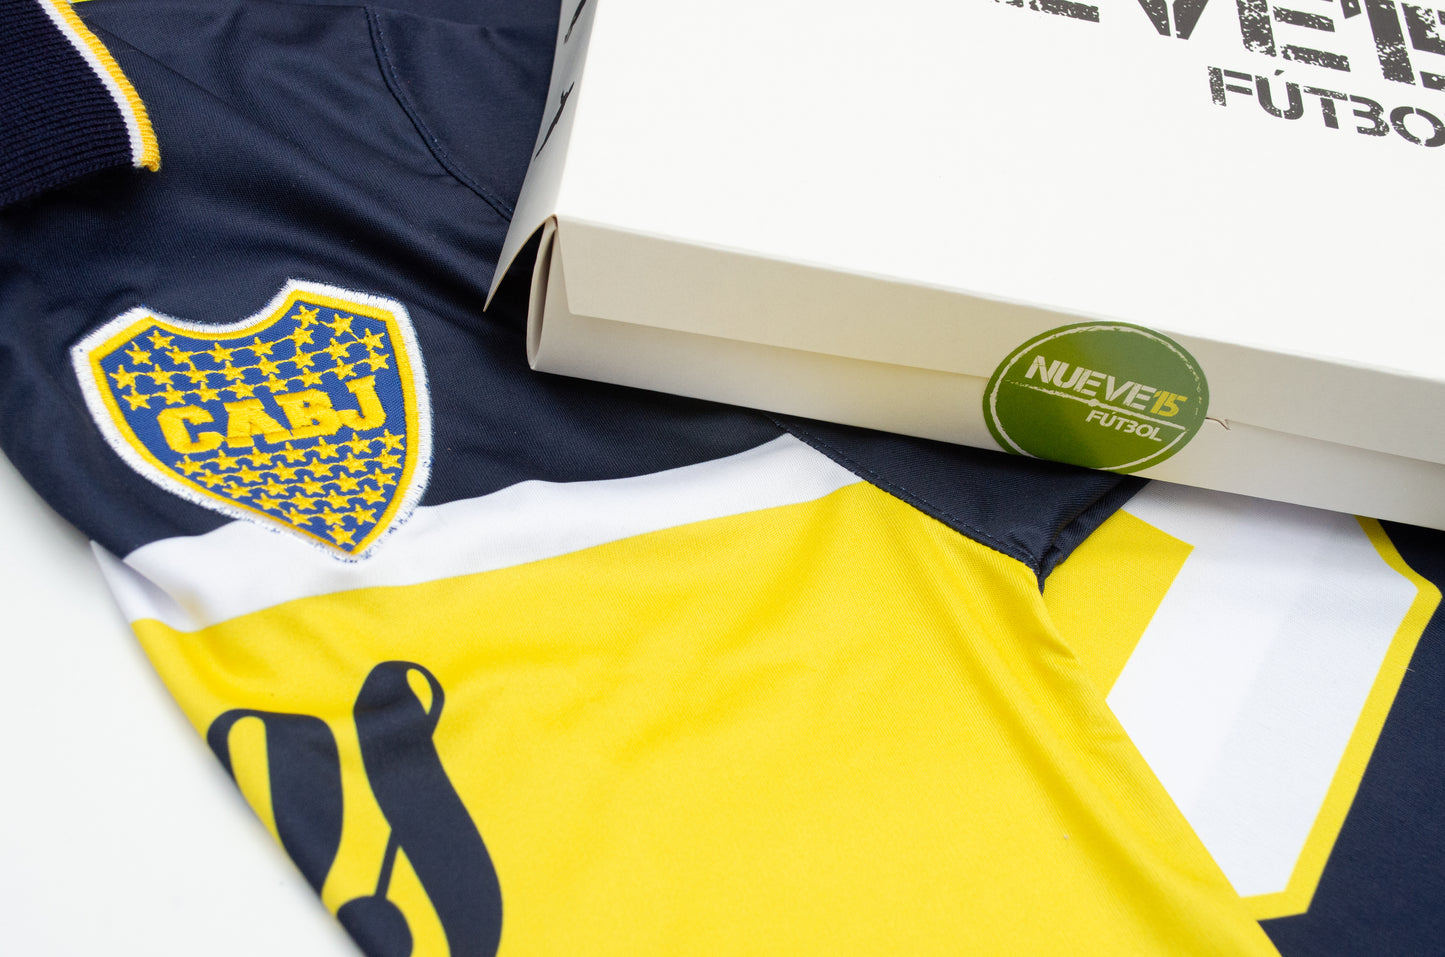 Camiseta Boca Juniors 1996-97